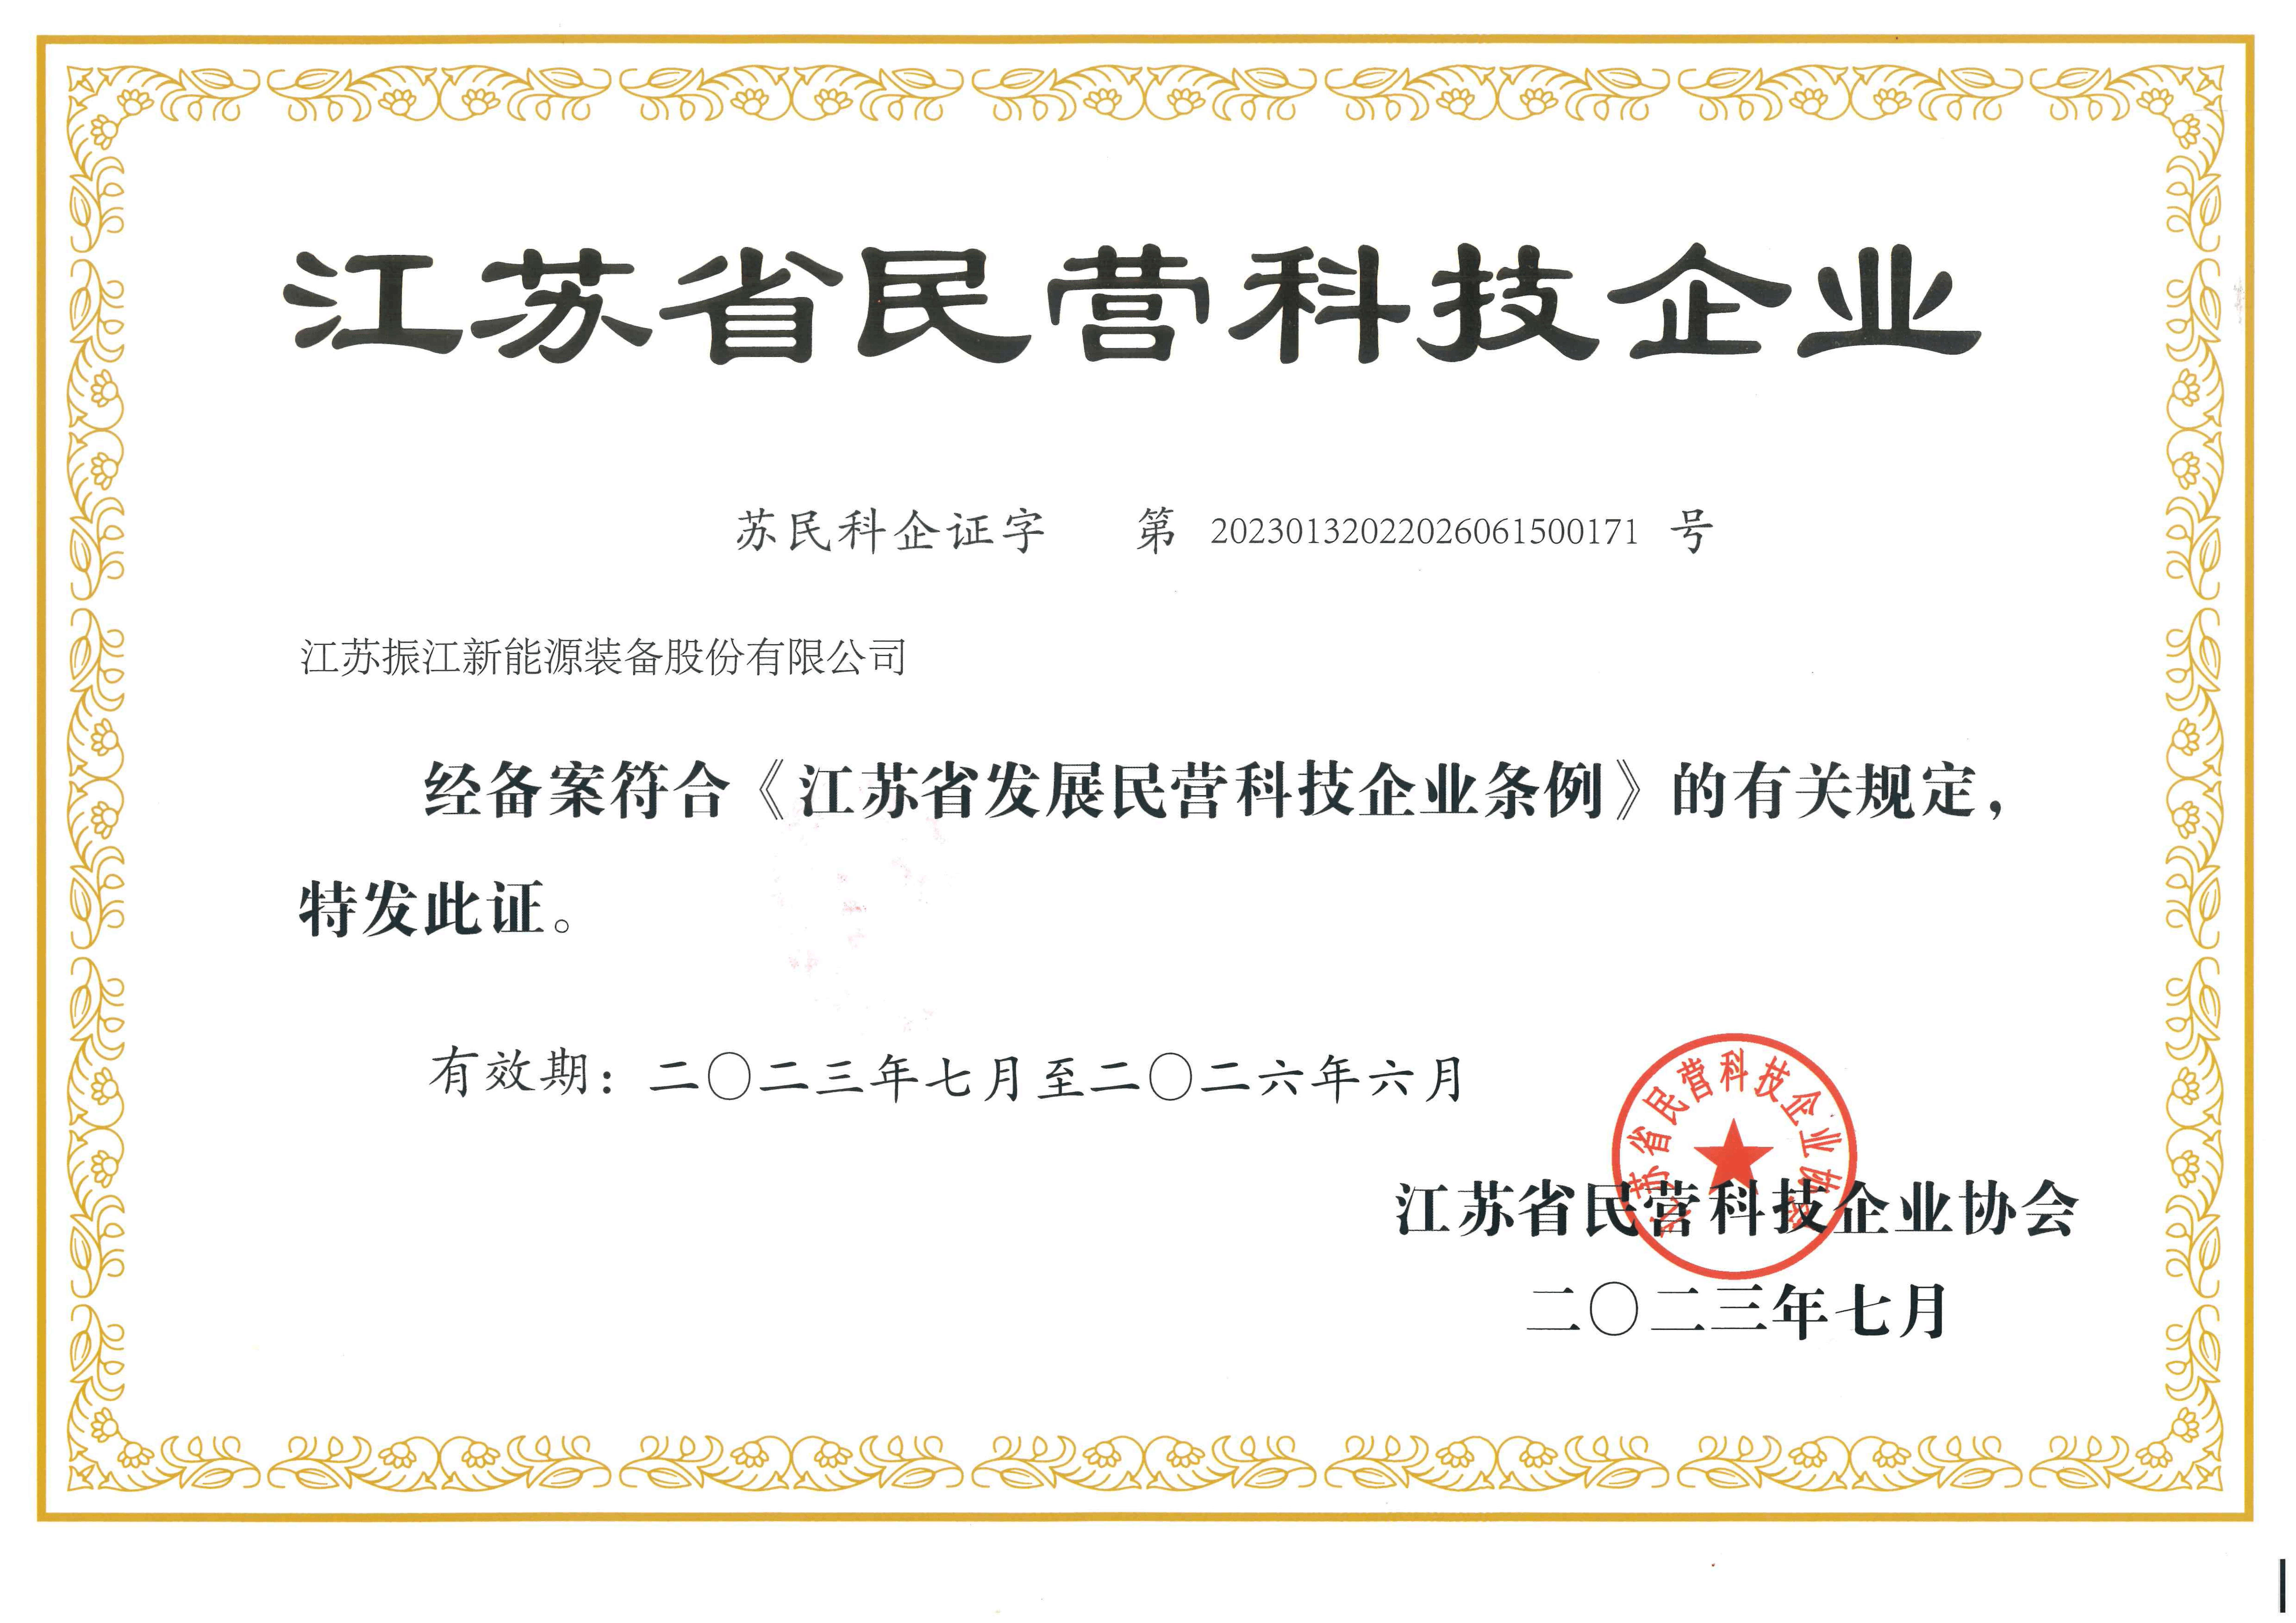 8、江苏省民营科技企业2023.7-2026.6_00.png